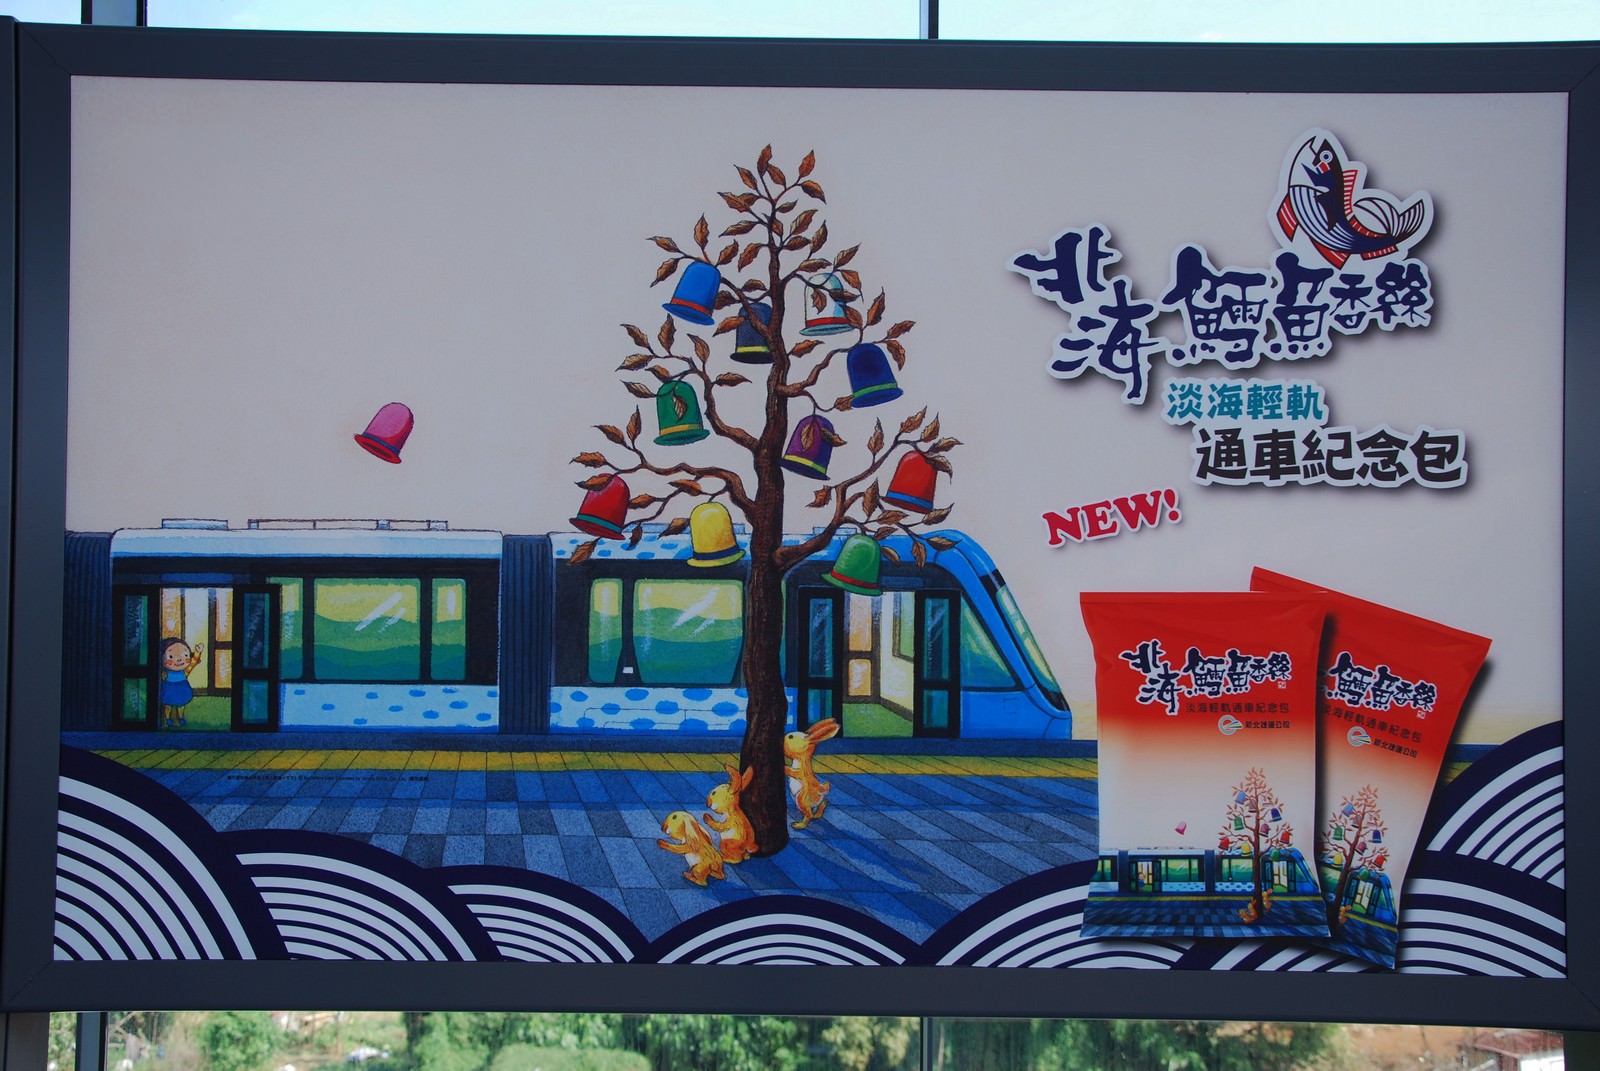 淡海輕軌綠山線, 輕軌淡江大學站, 廣告看板